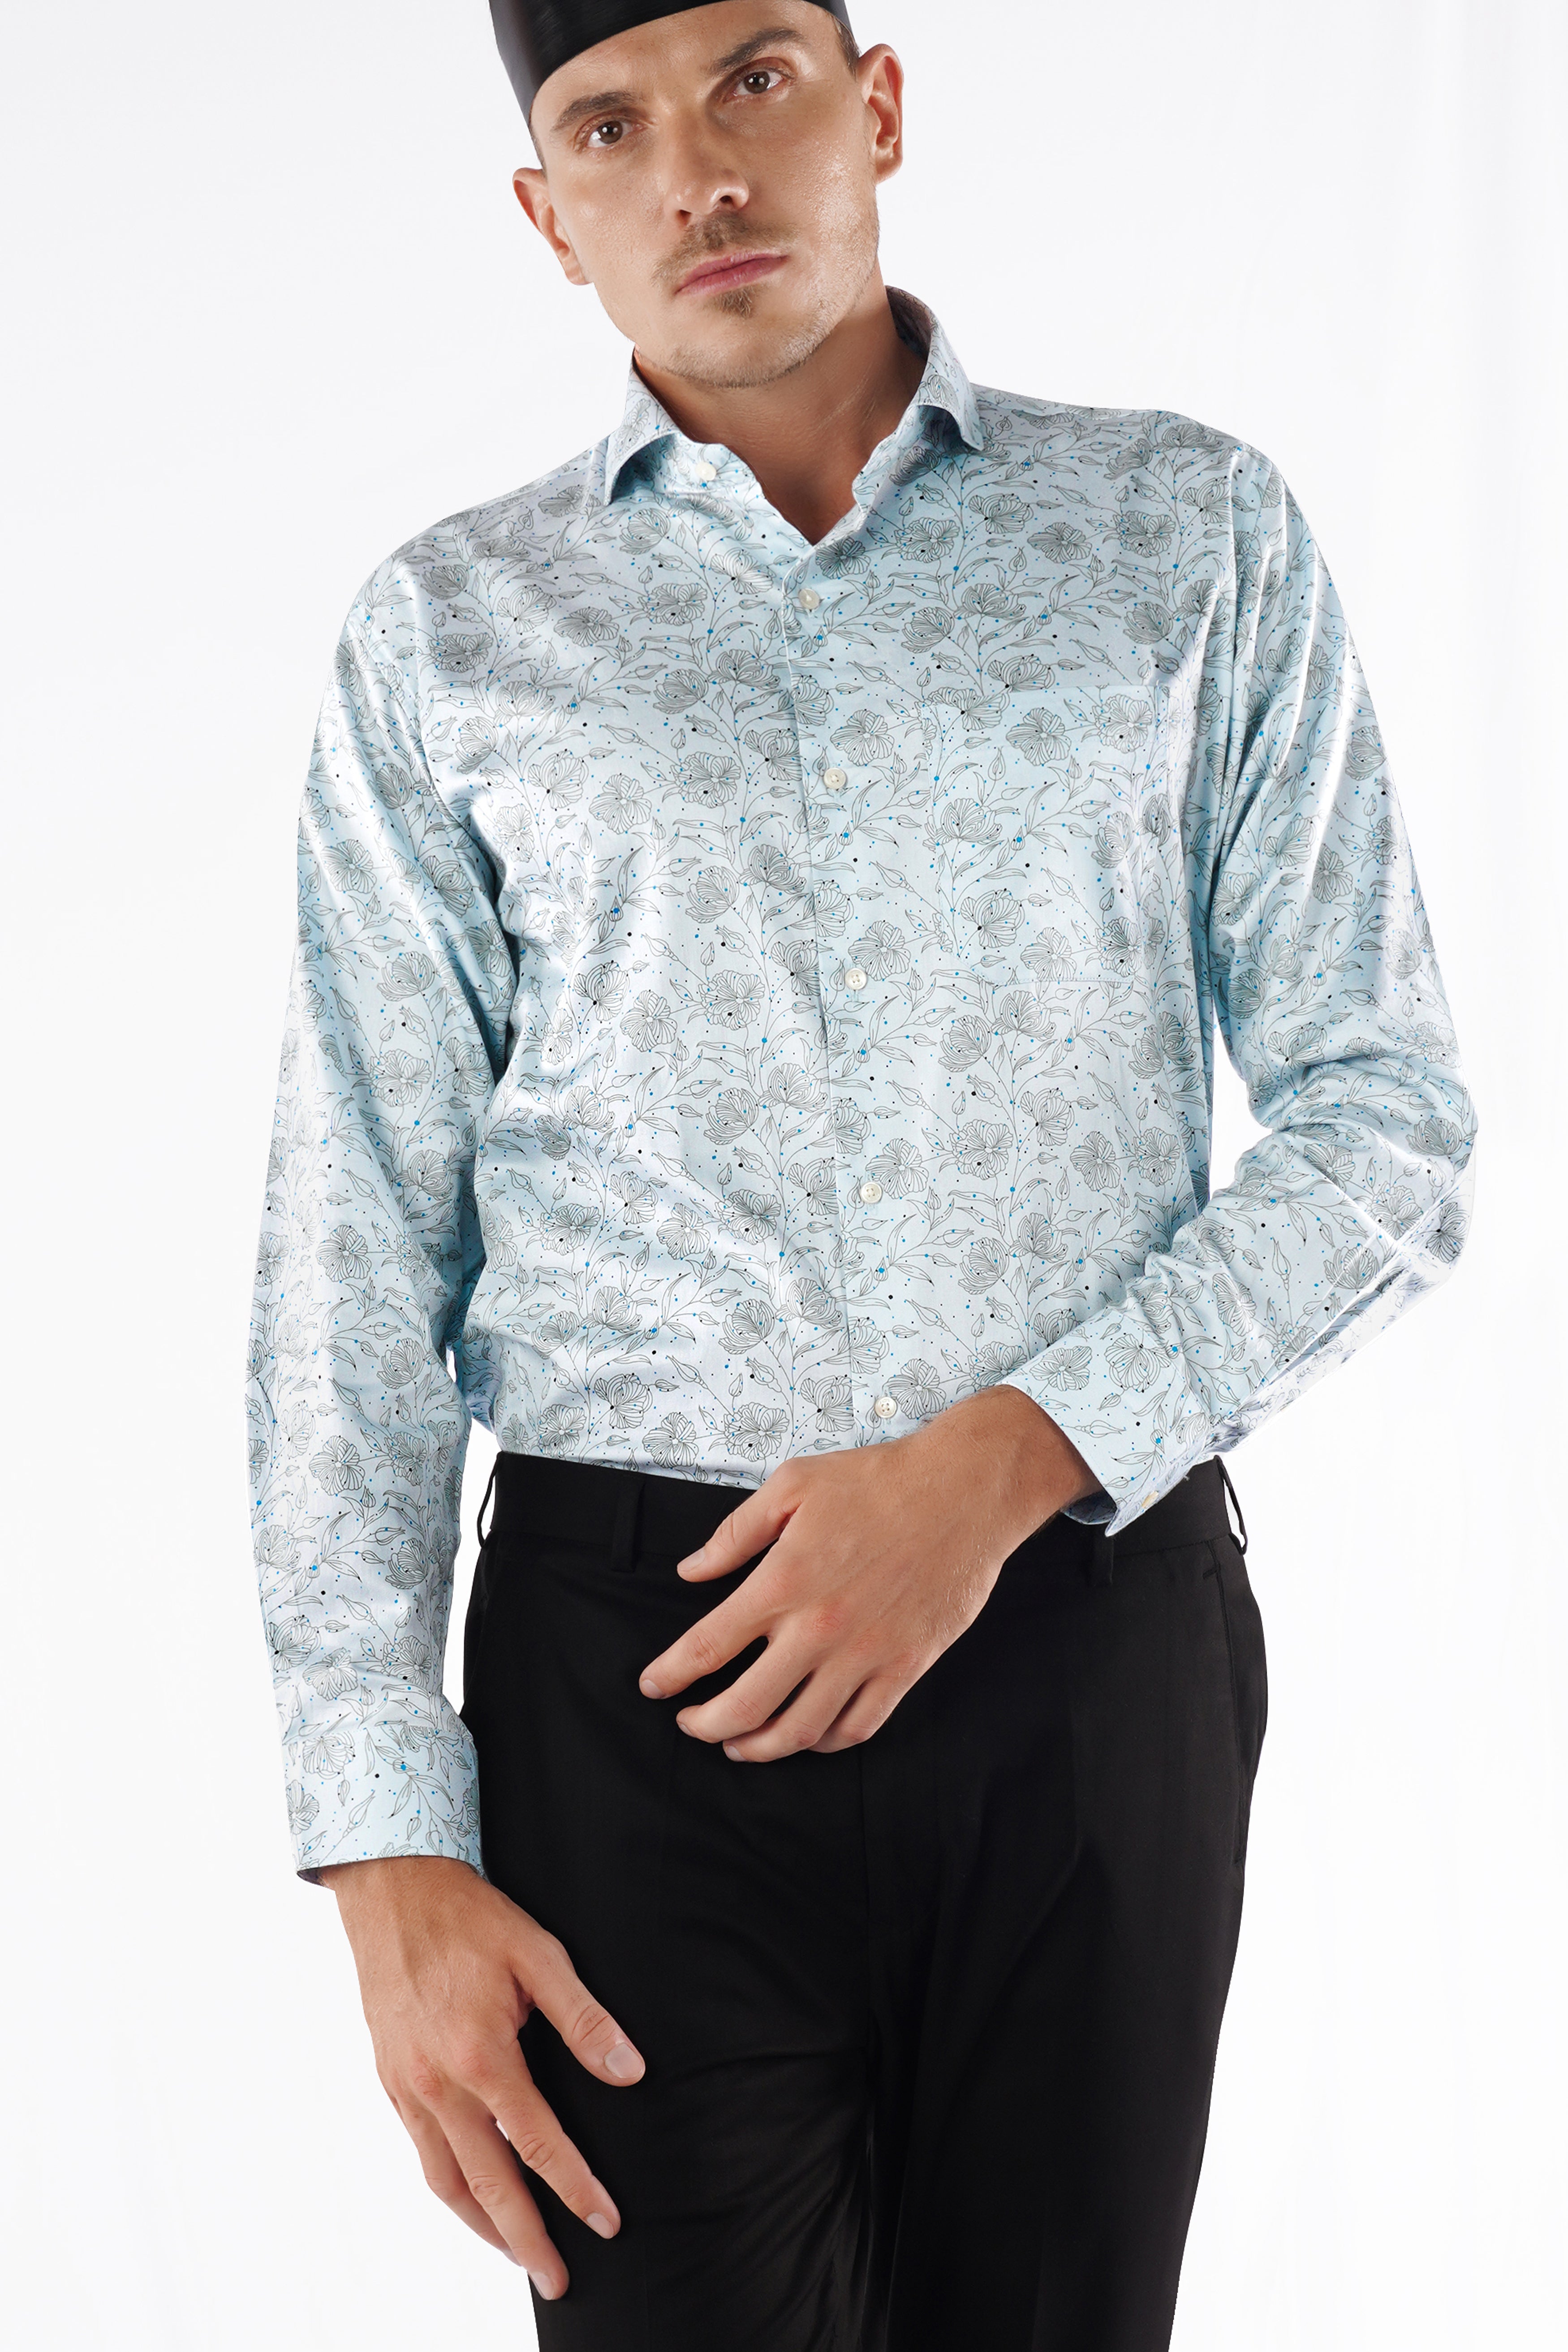 Blizzard Blue Floral Printed Super Soft Premium Cotton Shirt